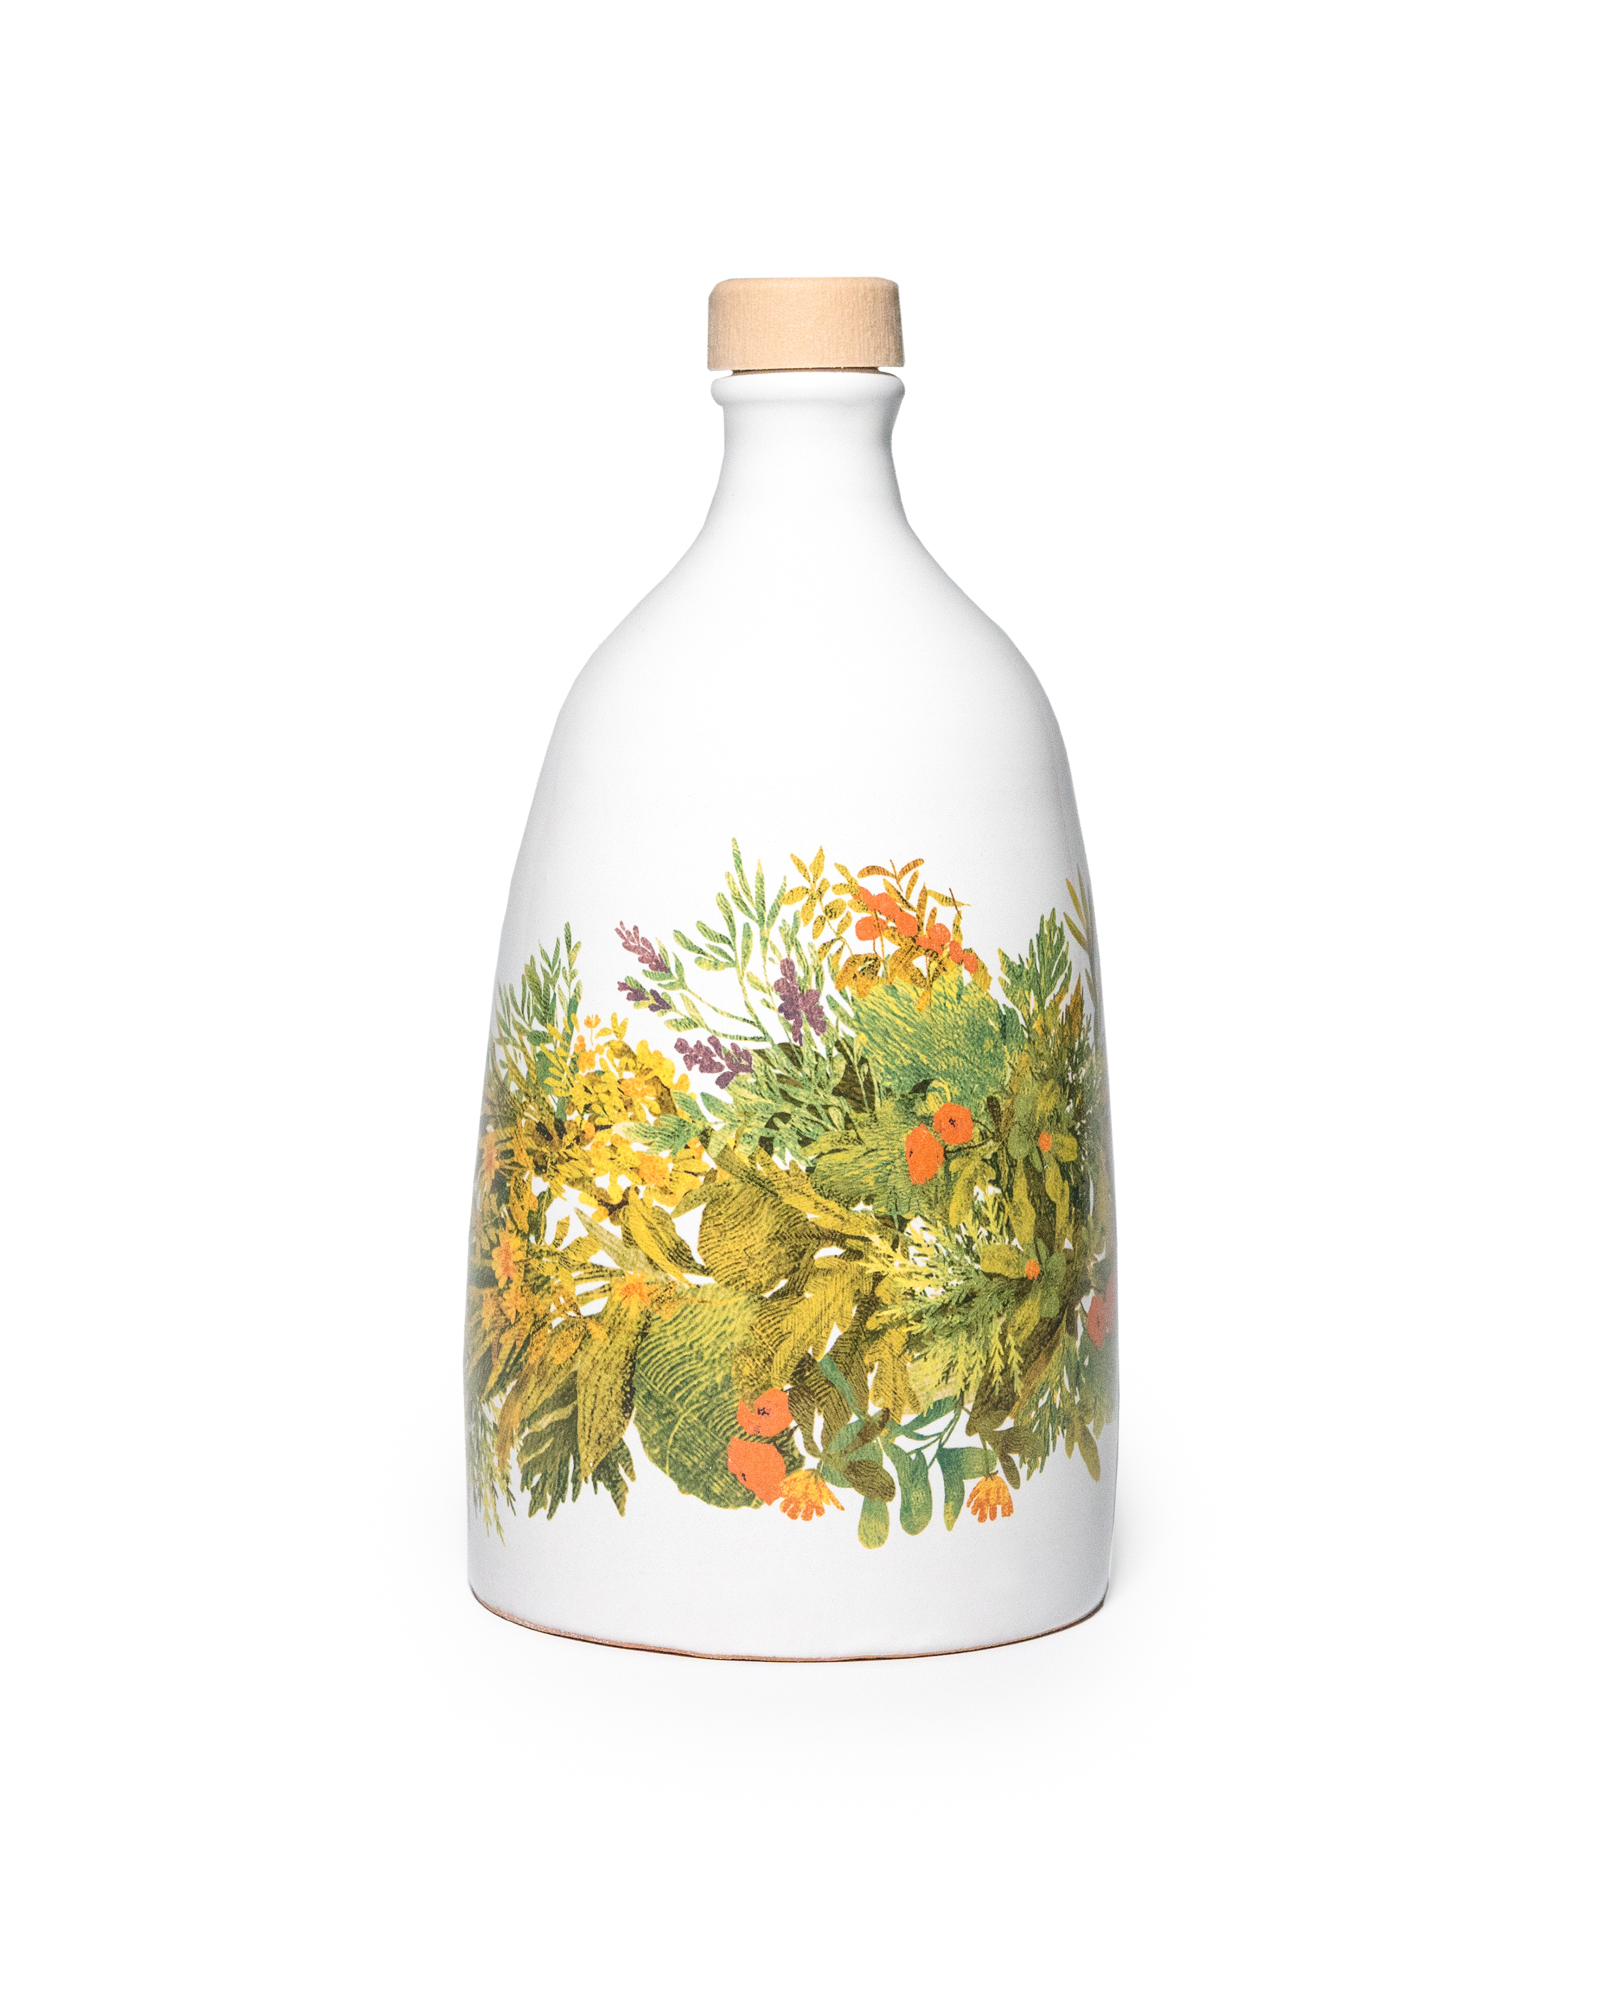 ANDANTE organic extra virgin olive oil, filtered, 500ml ceramic bottle "Erbe in festa"